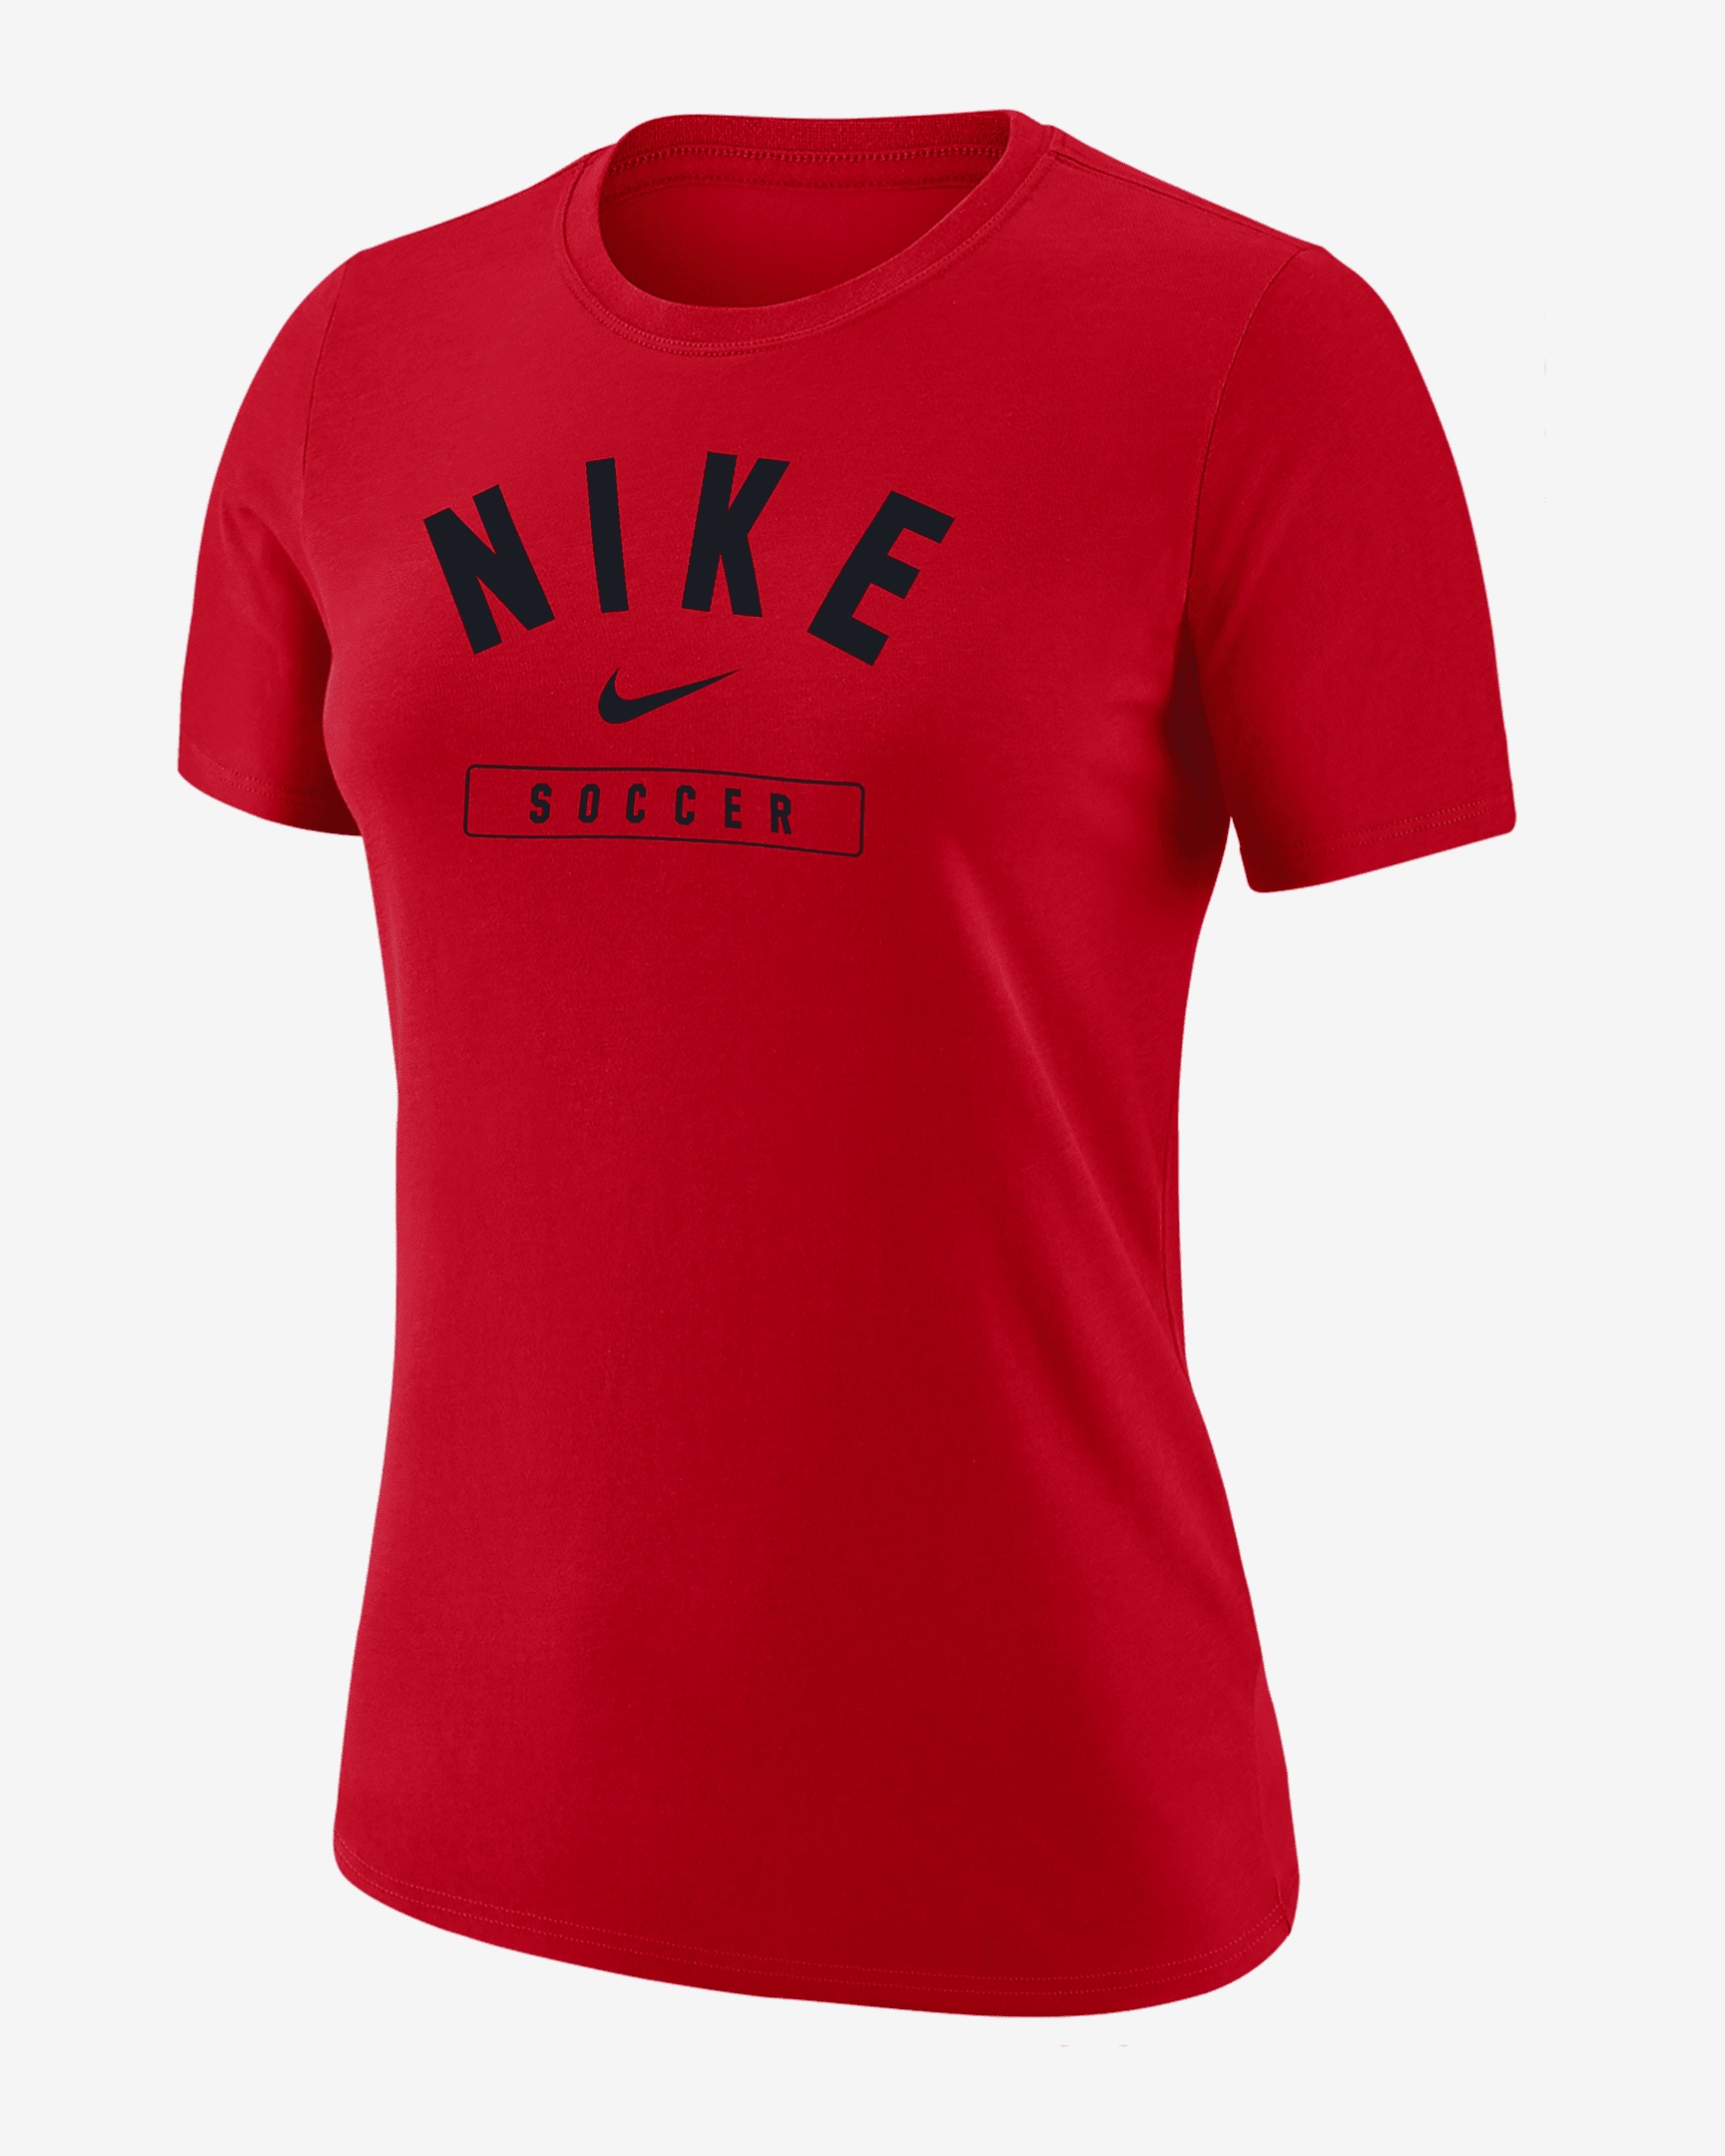 Nike Women's Swoosh Soccer T-Shirt - 1